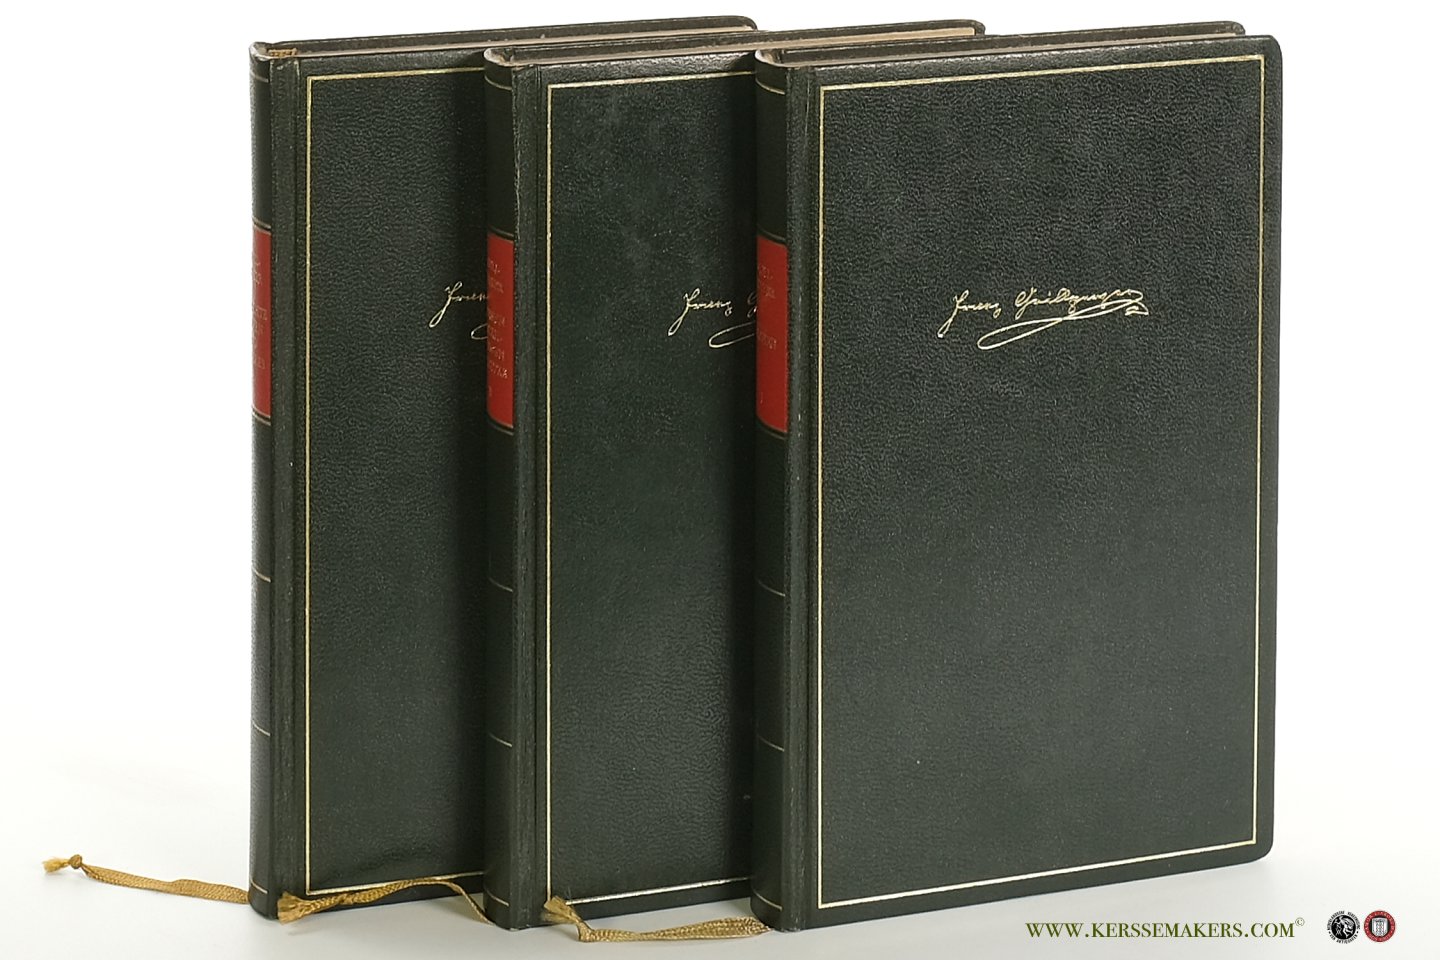 Grillparzer, Franz. - Werke: Band I : Dramen. Band II : Dramen Erzählungen, Aufsätze. Band III : Gedichte, Epigramme, Satiren, Autobiographische Schriften (3 volumes)